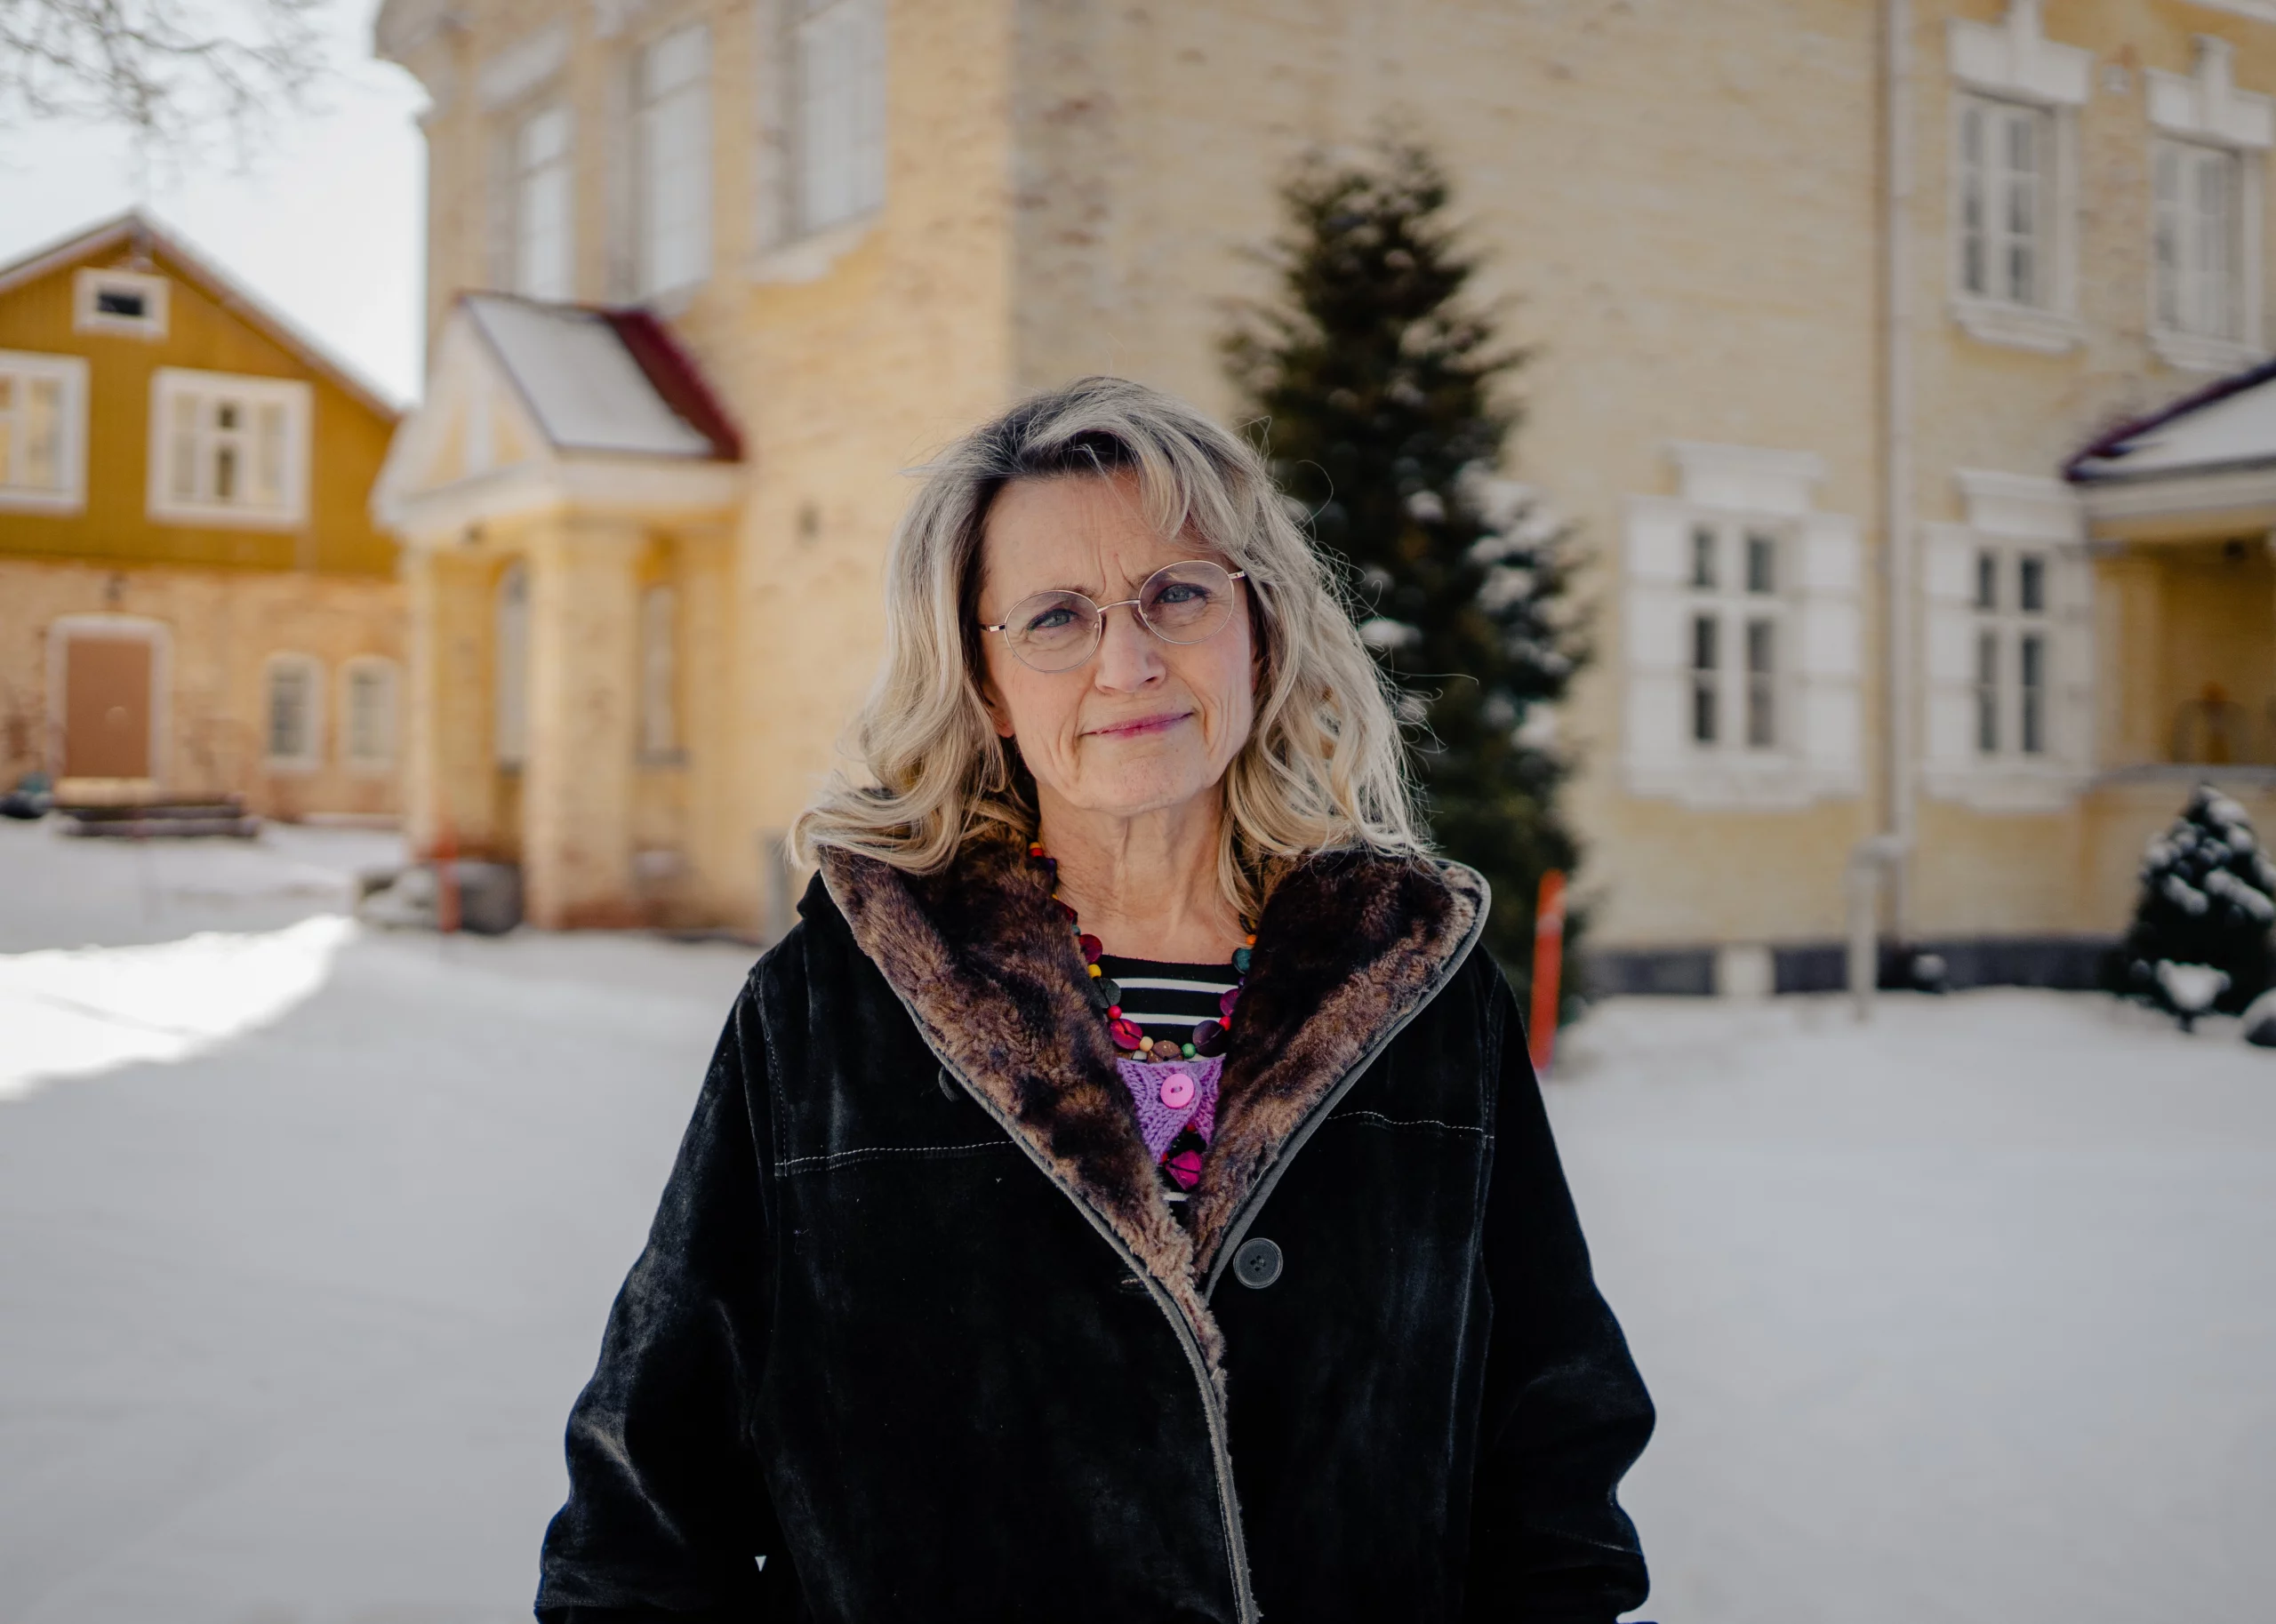 DEMAIN: Le procès de l’élue finlandaise qui a envoyé un tweet biblique